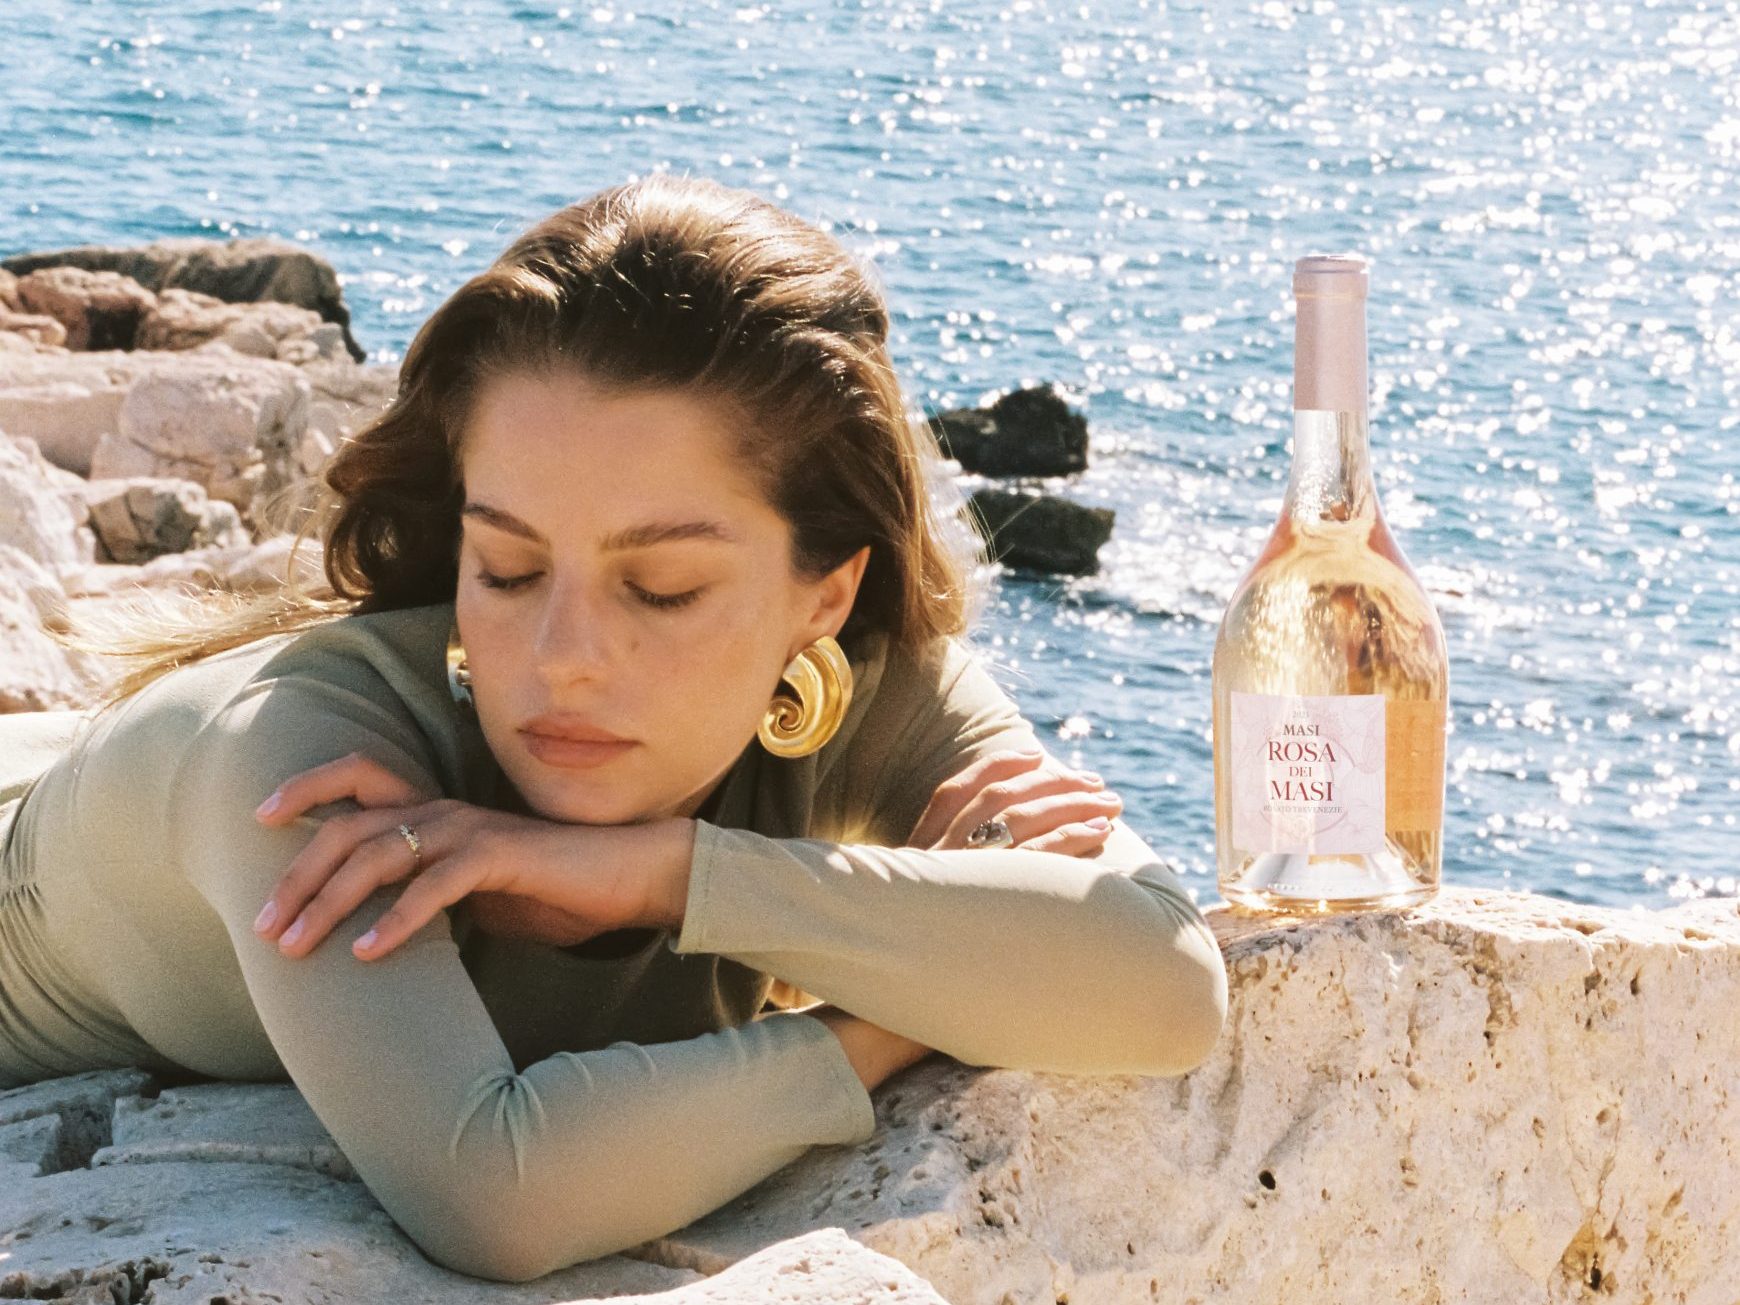 Una donna con un top verde si riposa su delle rocce bianche vicino al mare. Una bottiglia di Rosa dei Masi è appoggiata sugli scogli accanto a lei.